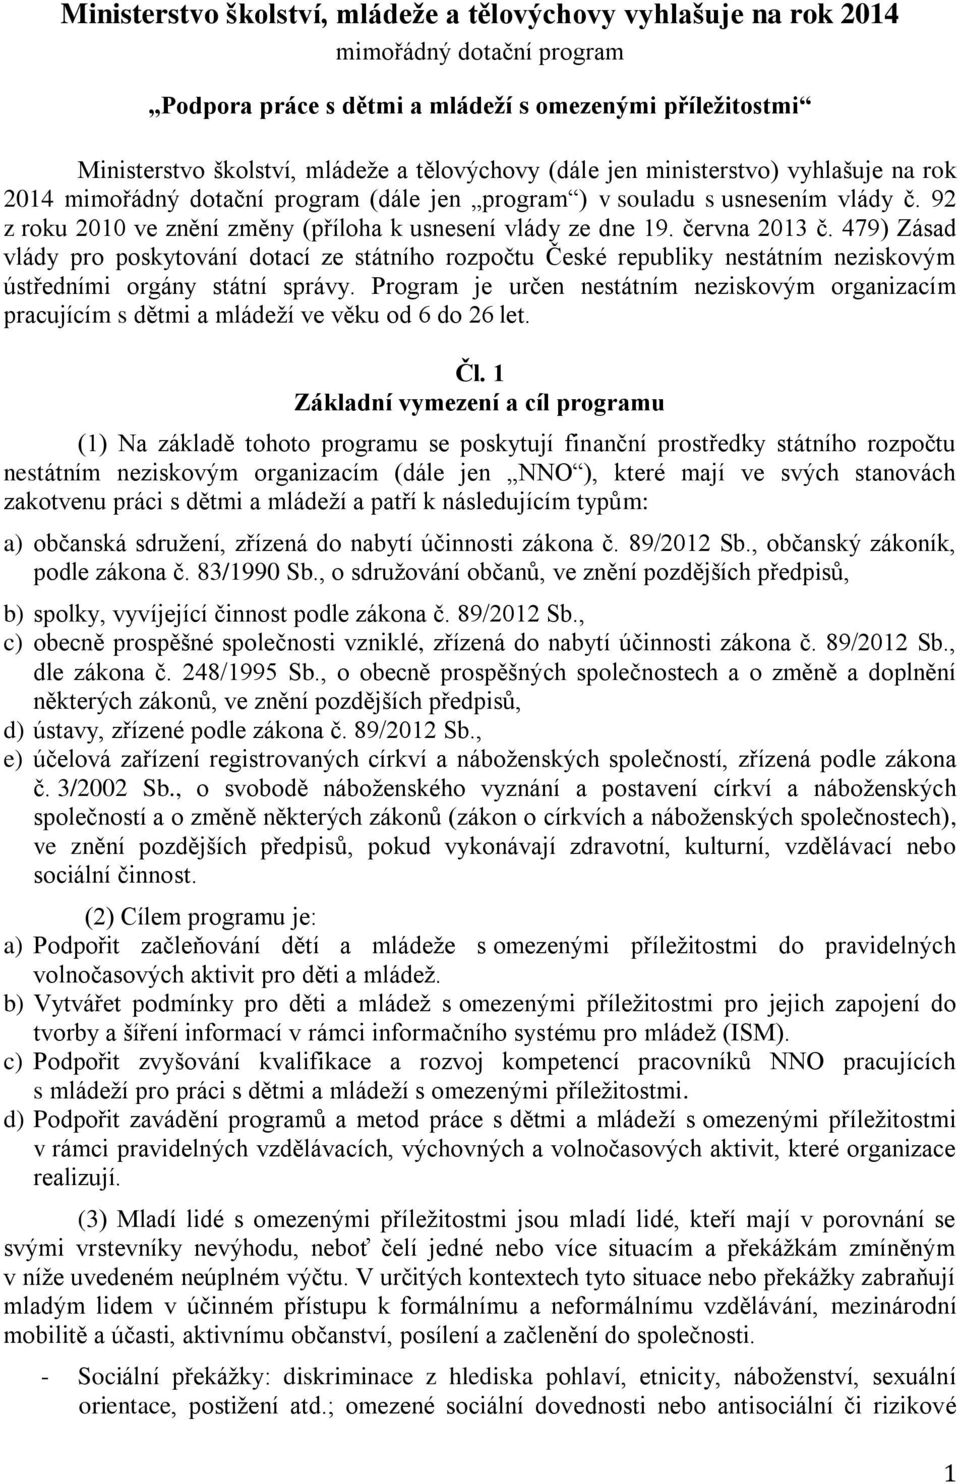 června 2013 č. 479) Zásad vlády pro poskytování dotací ze státního rozpočtu České republiky nestátním neziskovým ústředními orgány státní správy.